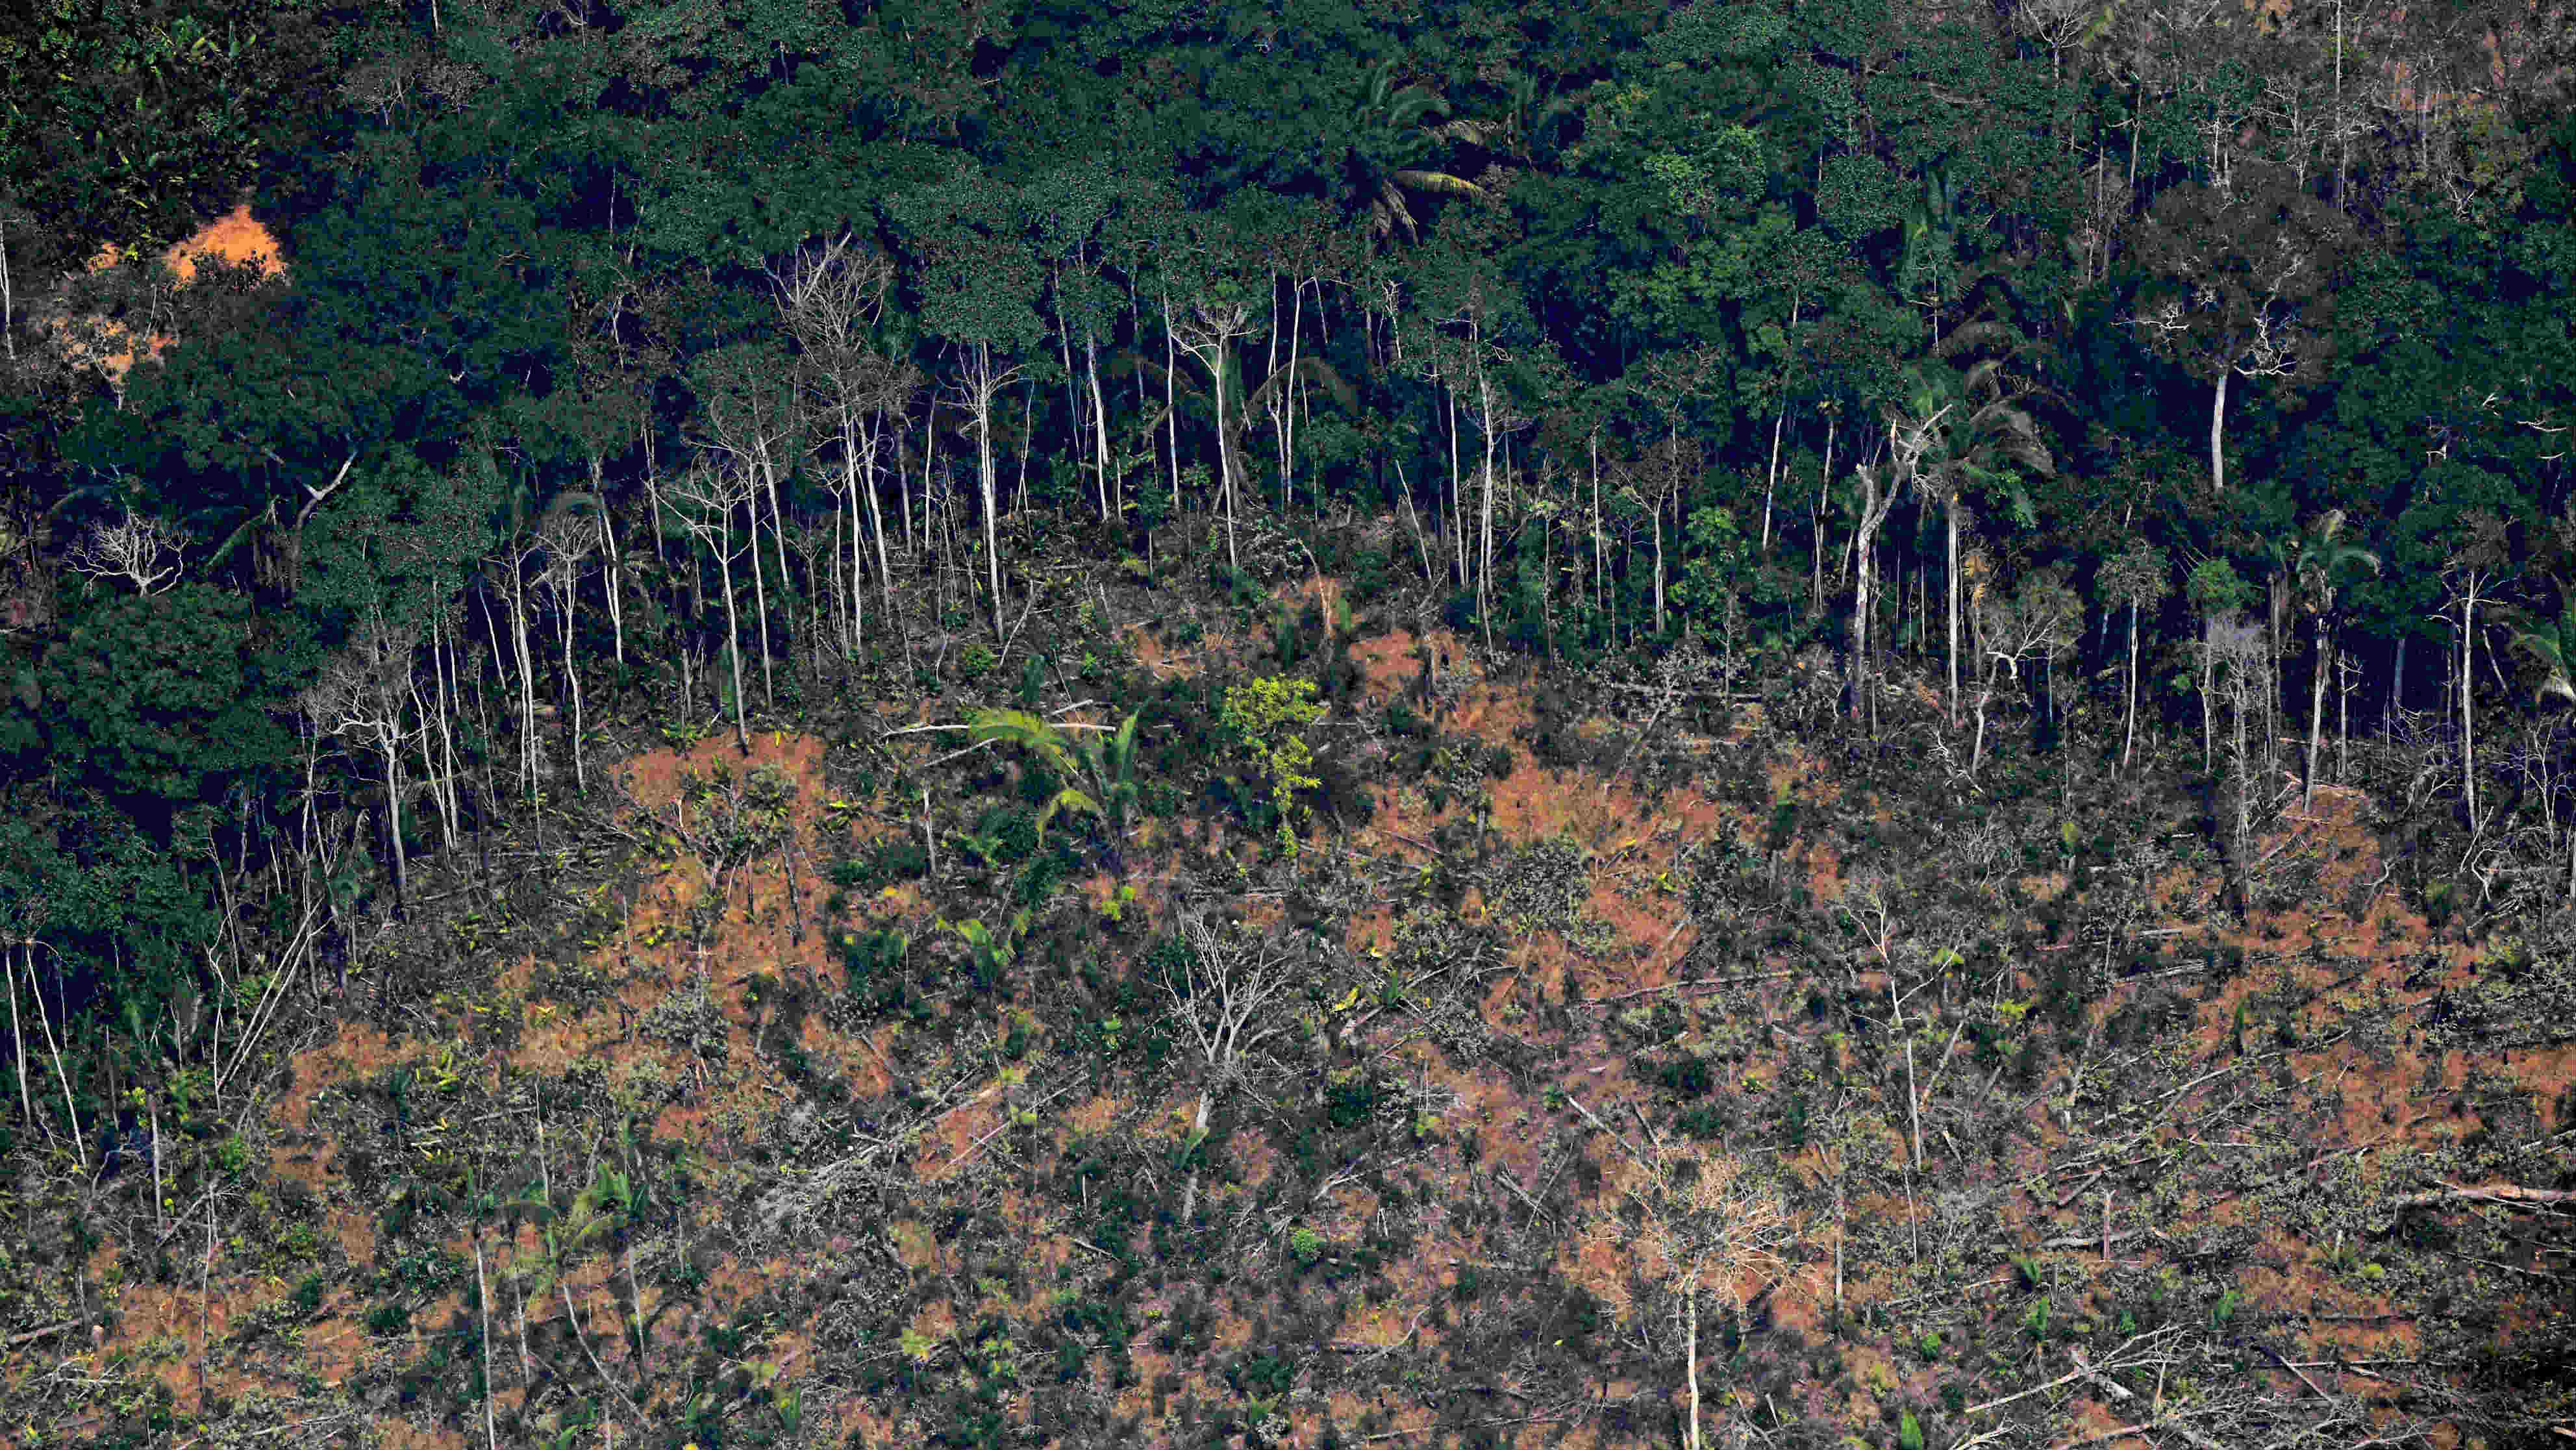  pérdida de bosques